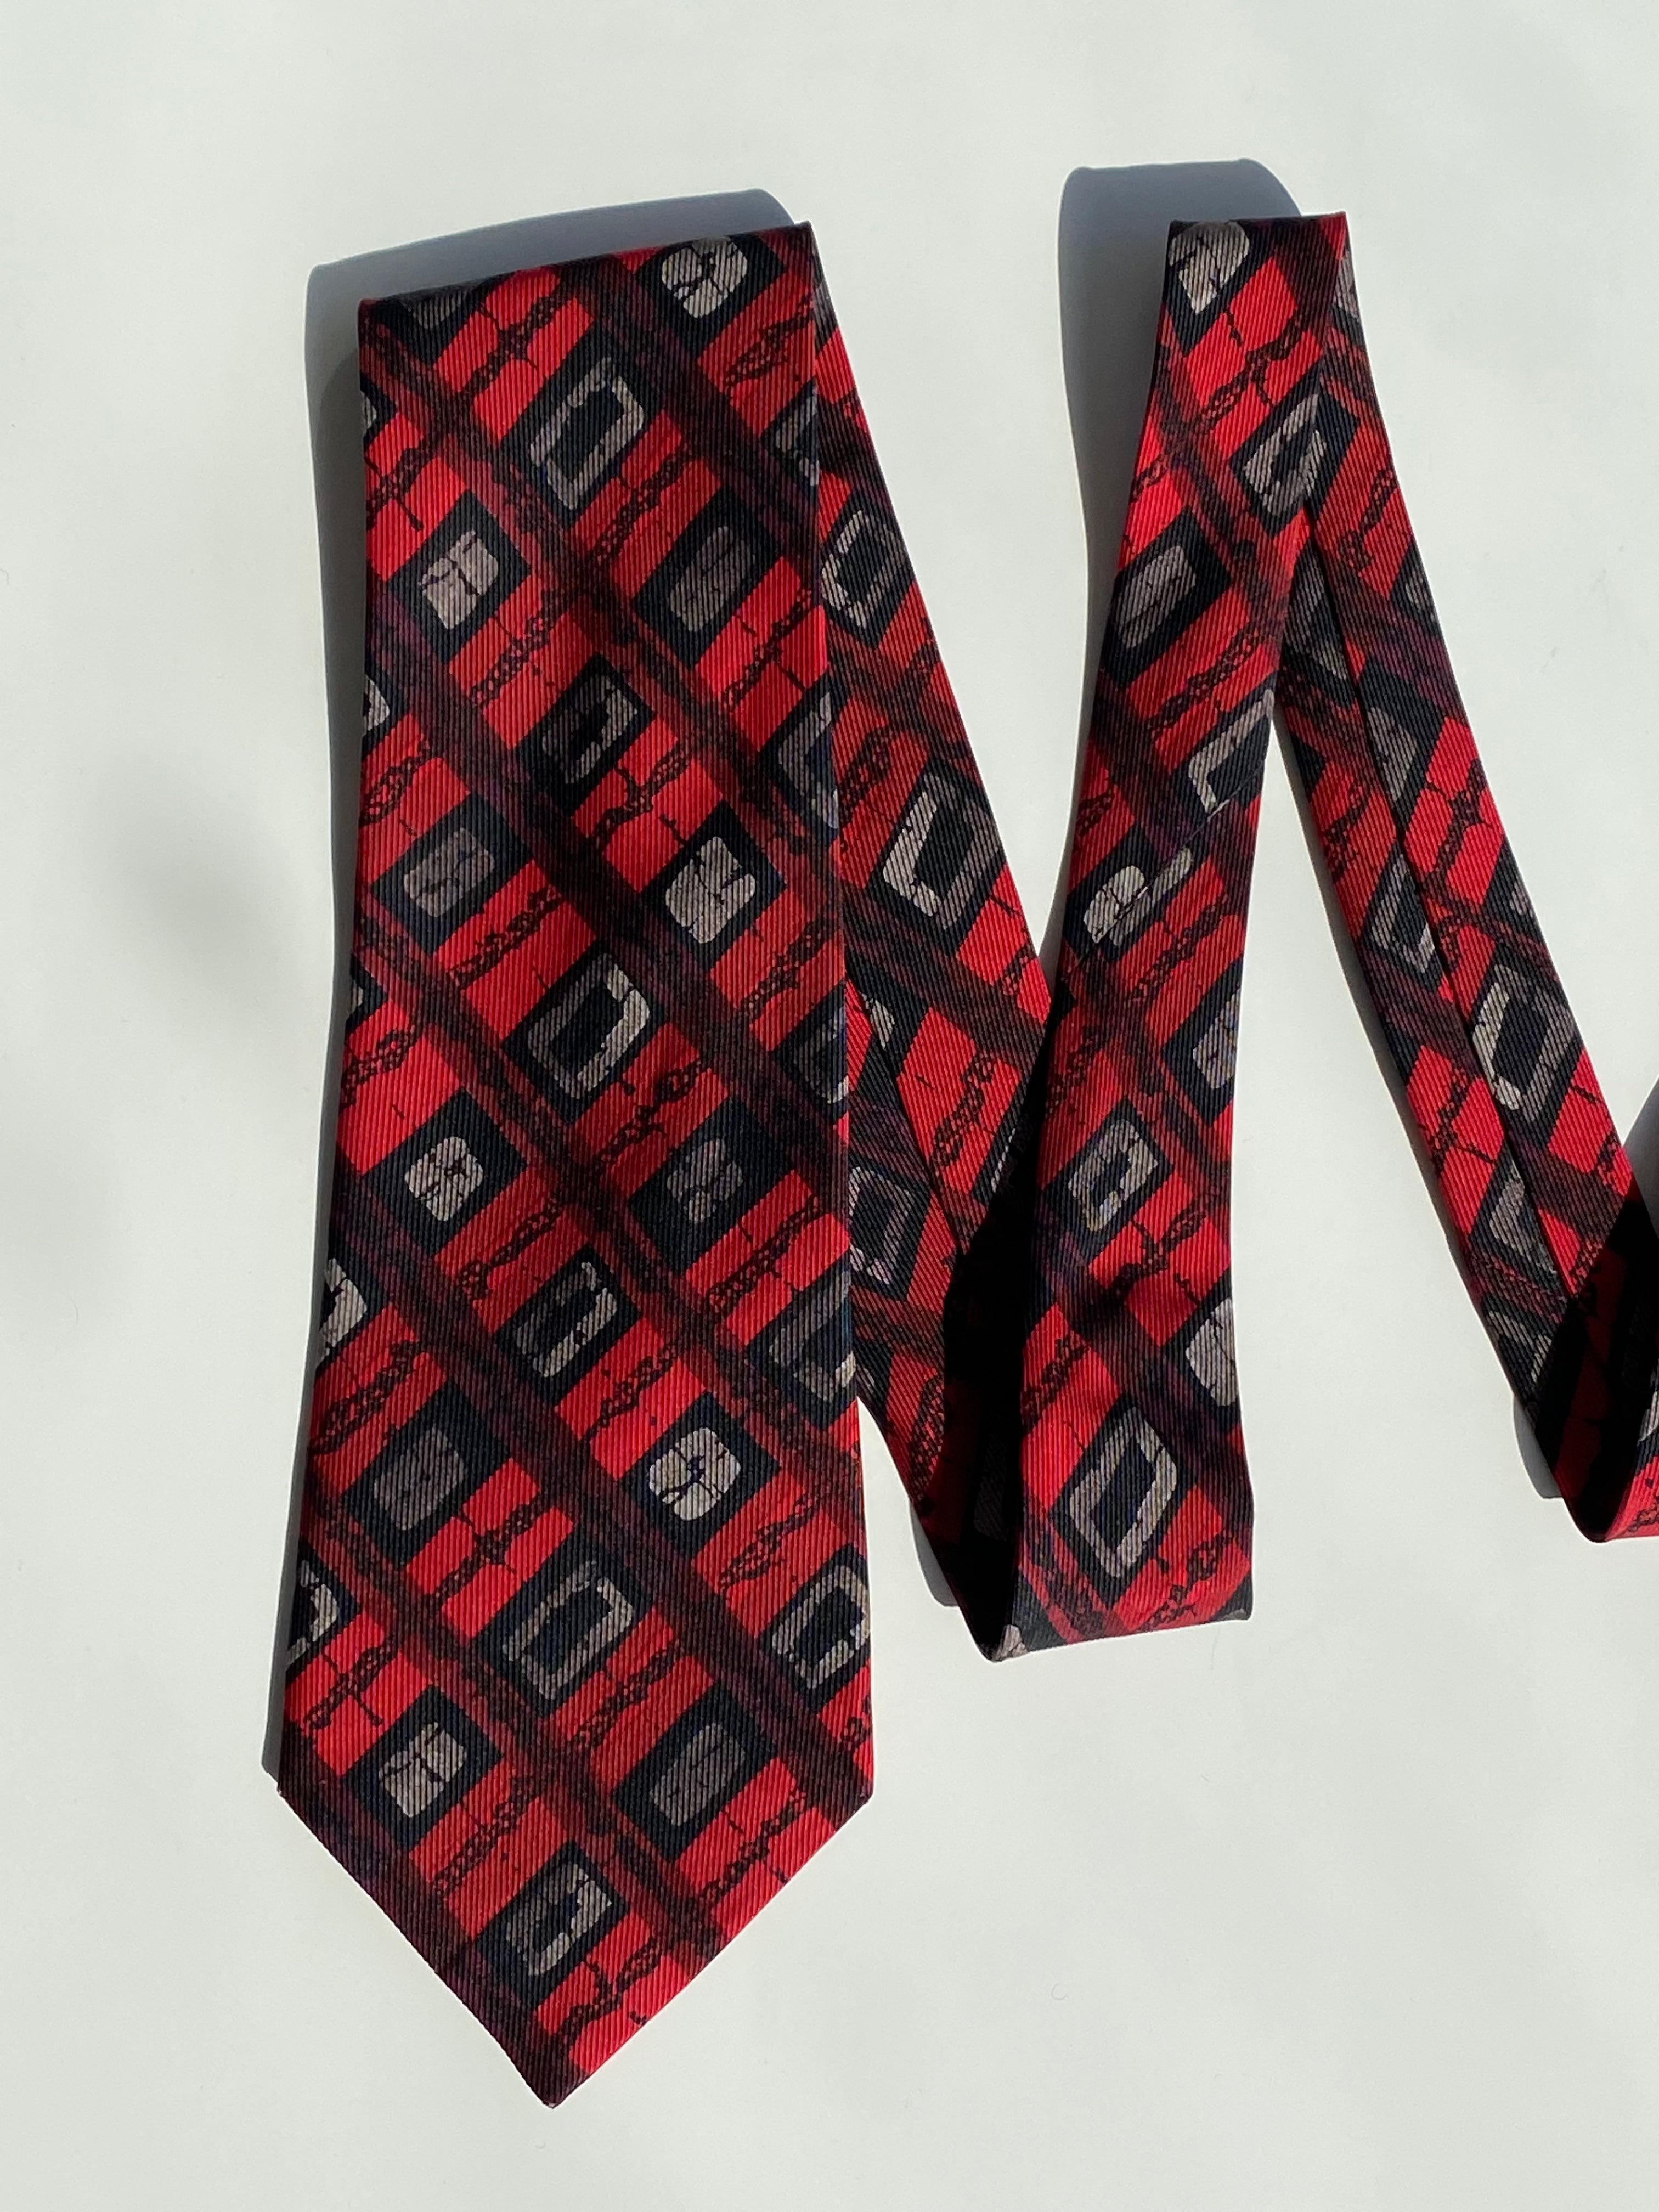 Vintage Printed Tie - Balagan Vintage Ties 00s, 80s, 90s, men, print, prints, tie, ties, vintage, vintage ties